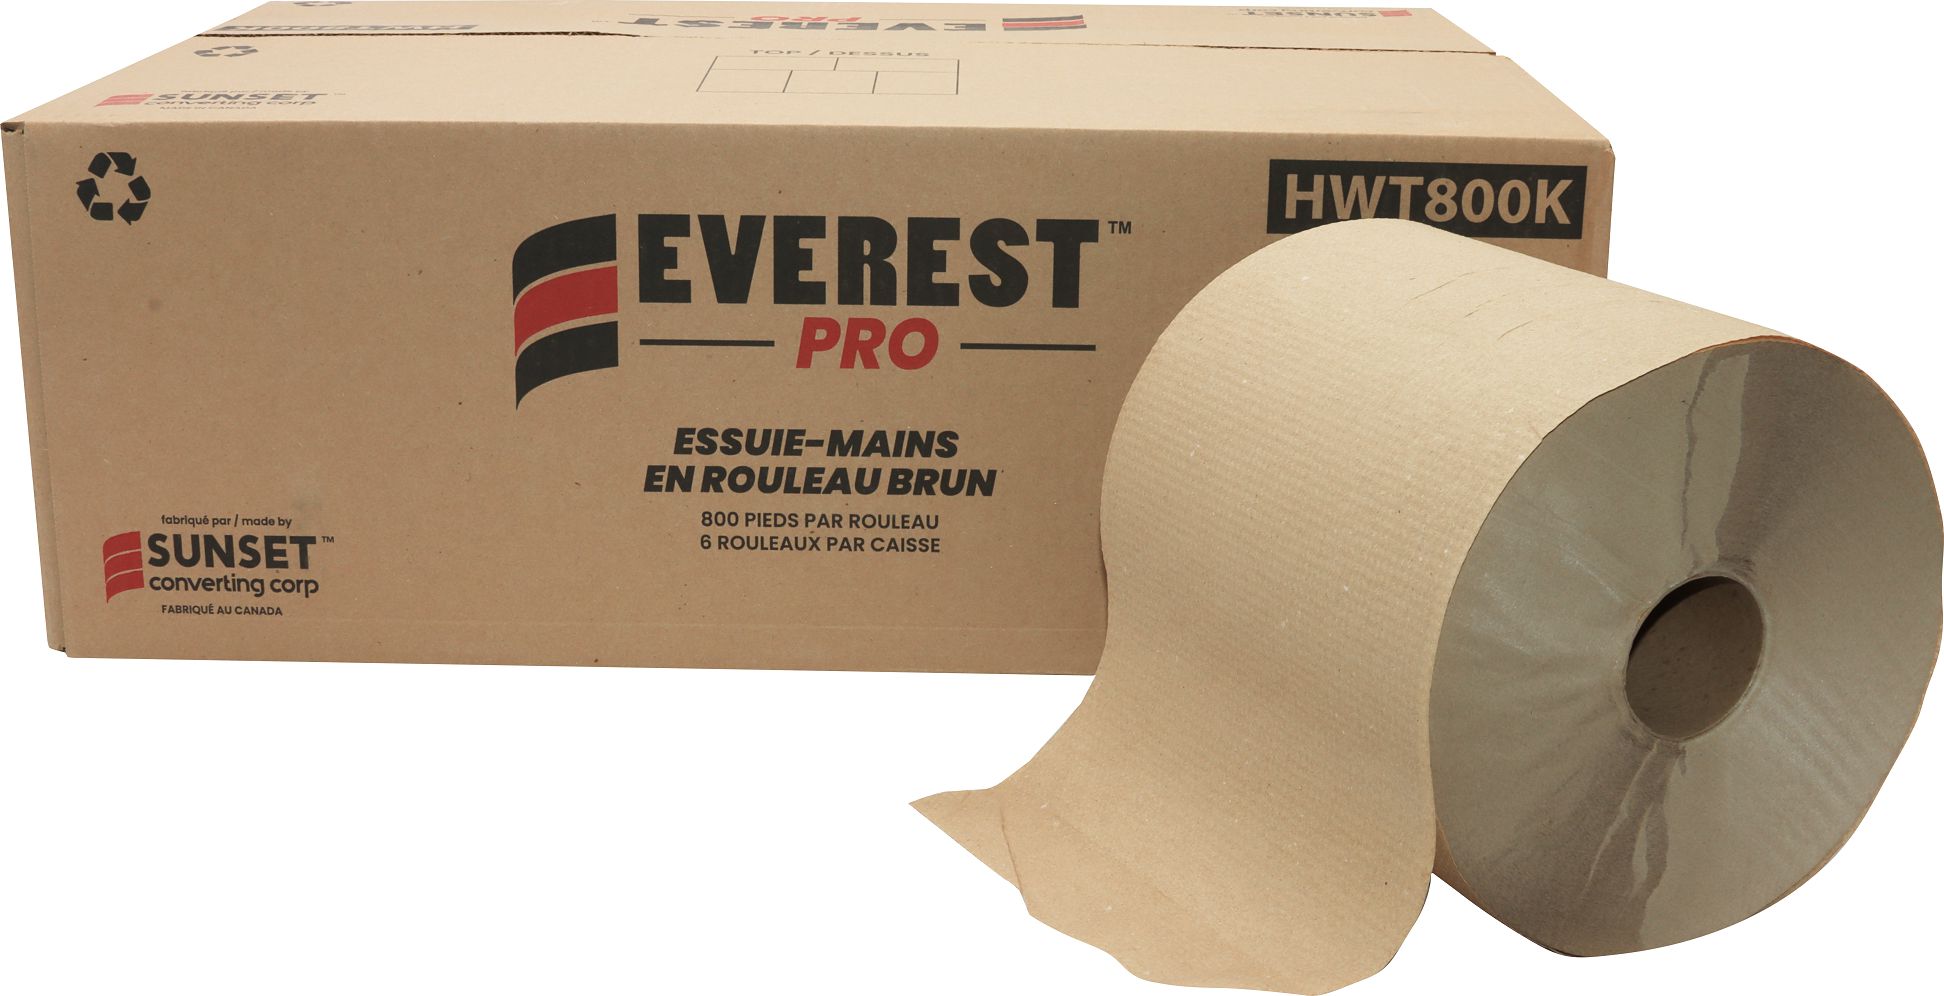 Everest Pro - 800 Feet, 7.85" x 800" Kraft Roll Towel, 6 Rl/Cs - HWT800K